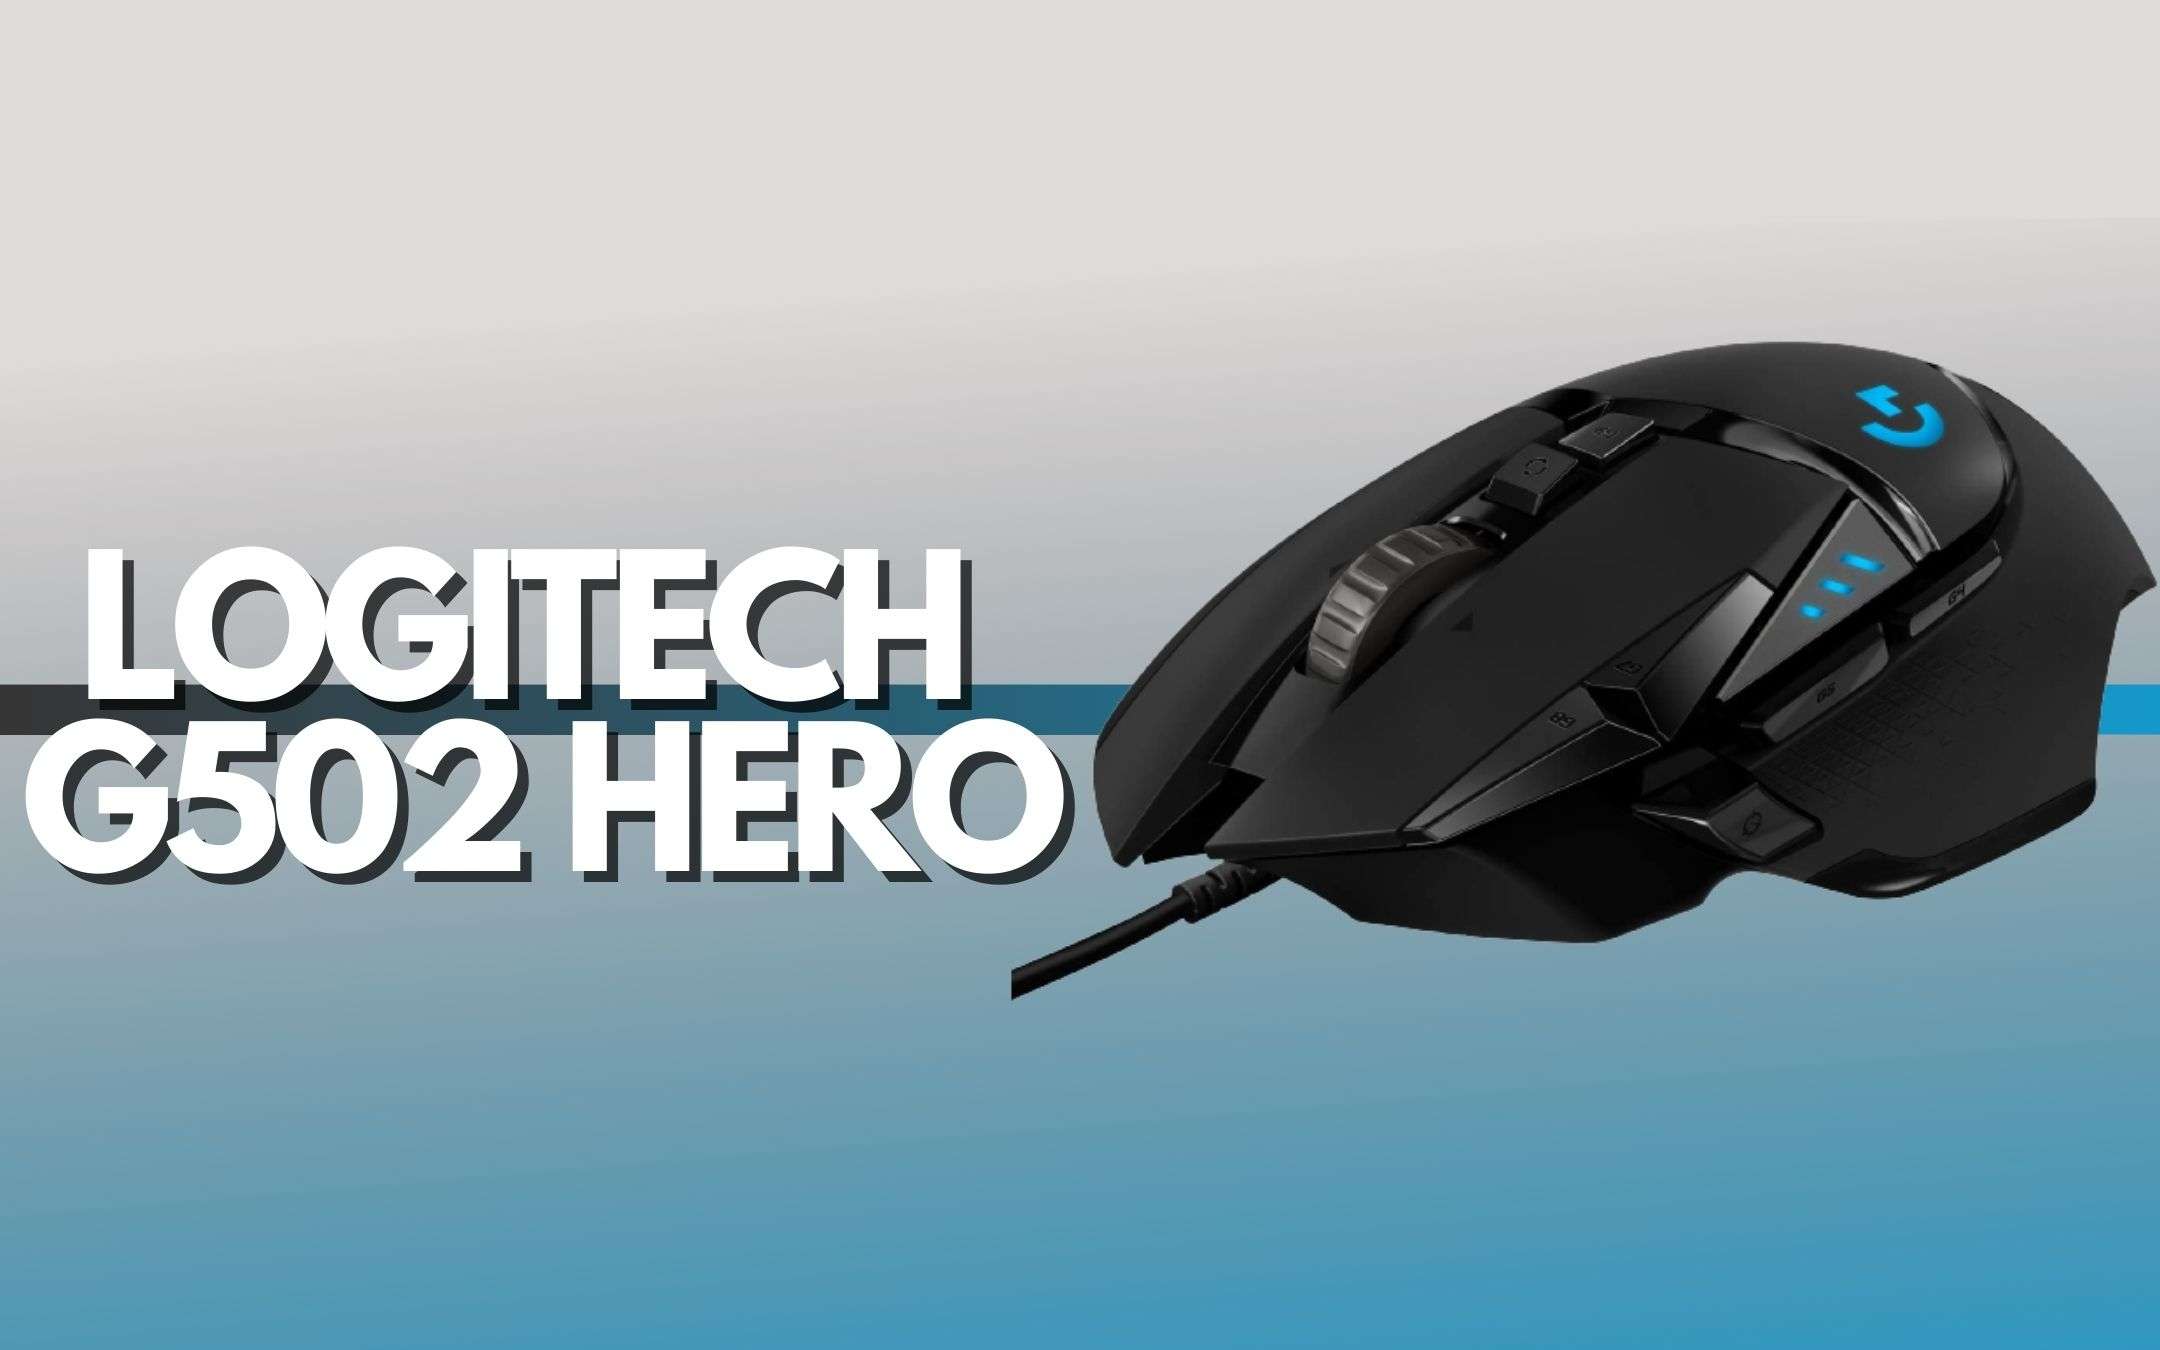 Logitech G502 HERO: mouse a prezzo SPETTACOLARE